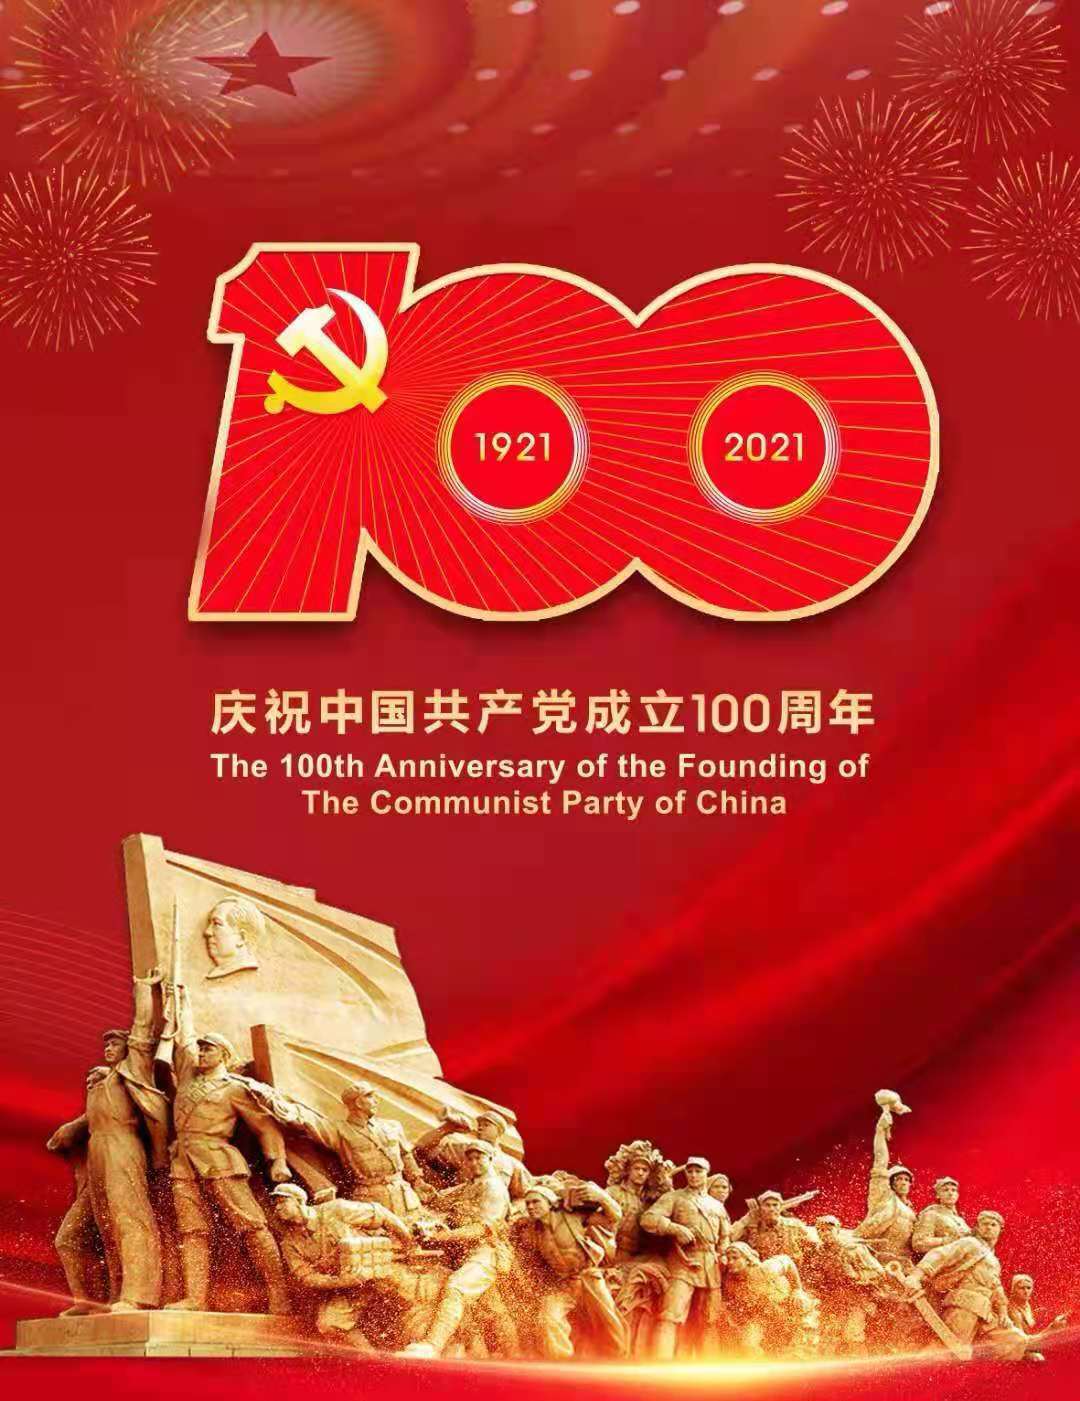 甘肅梅隆石材集團有限公司黨支部組織 觀看建黨100周年大會